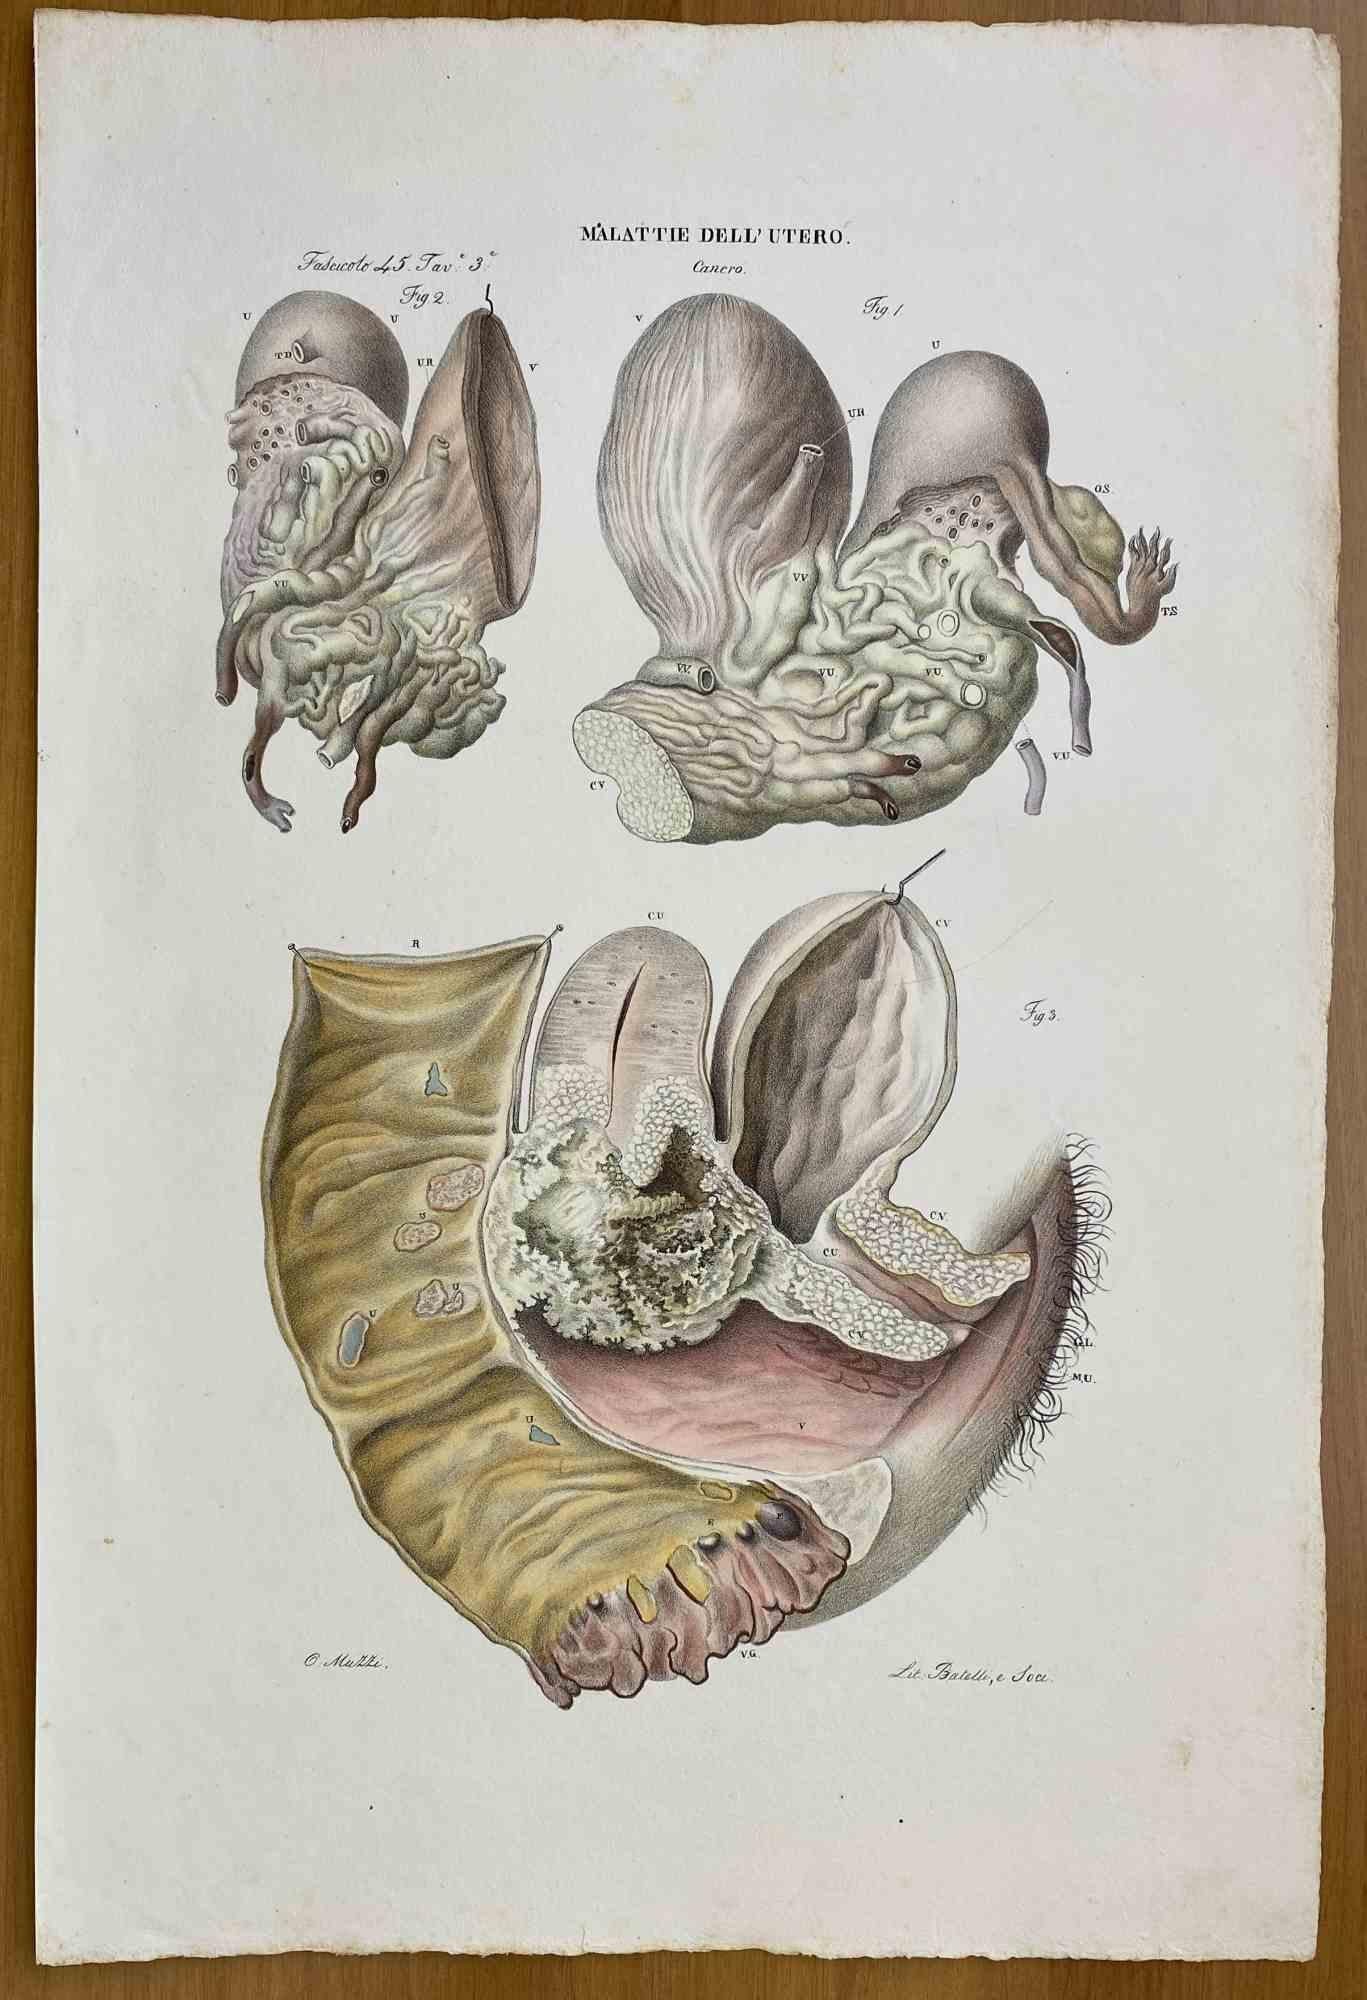  Diseases of Uterus ist eine handkolorierte Lithographie von Ottavio Muzzi für die Ausgabe von Antoine Chazal, Human Anatomy, Printers Batelli and Ridolfi, 1843.

Das Werk gehört zum Atlante generale della anatomia patologica del corpo umano von